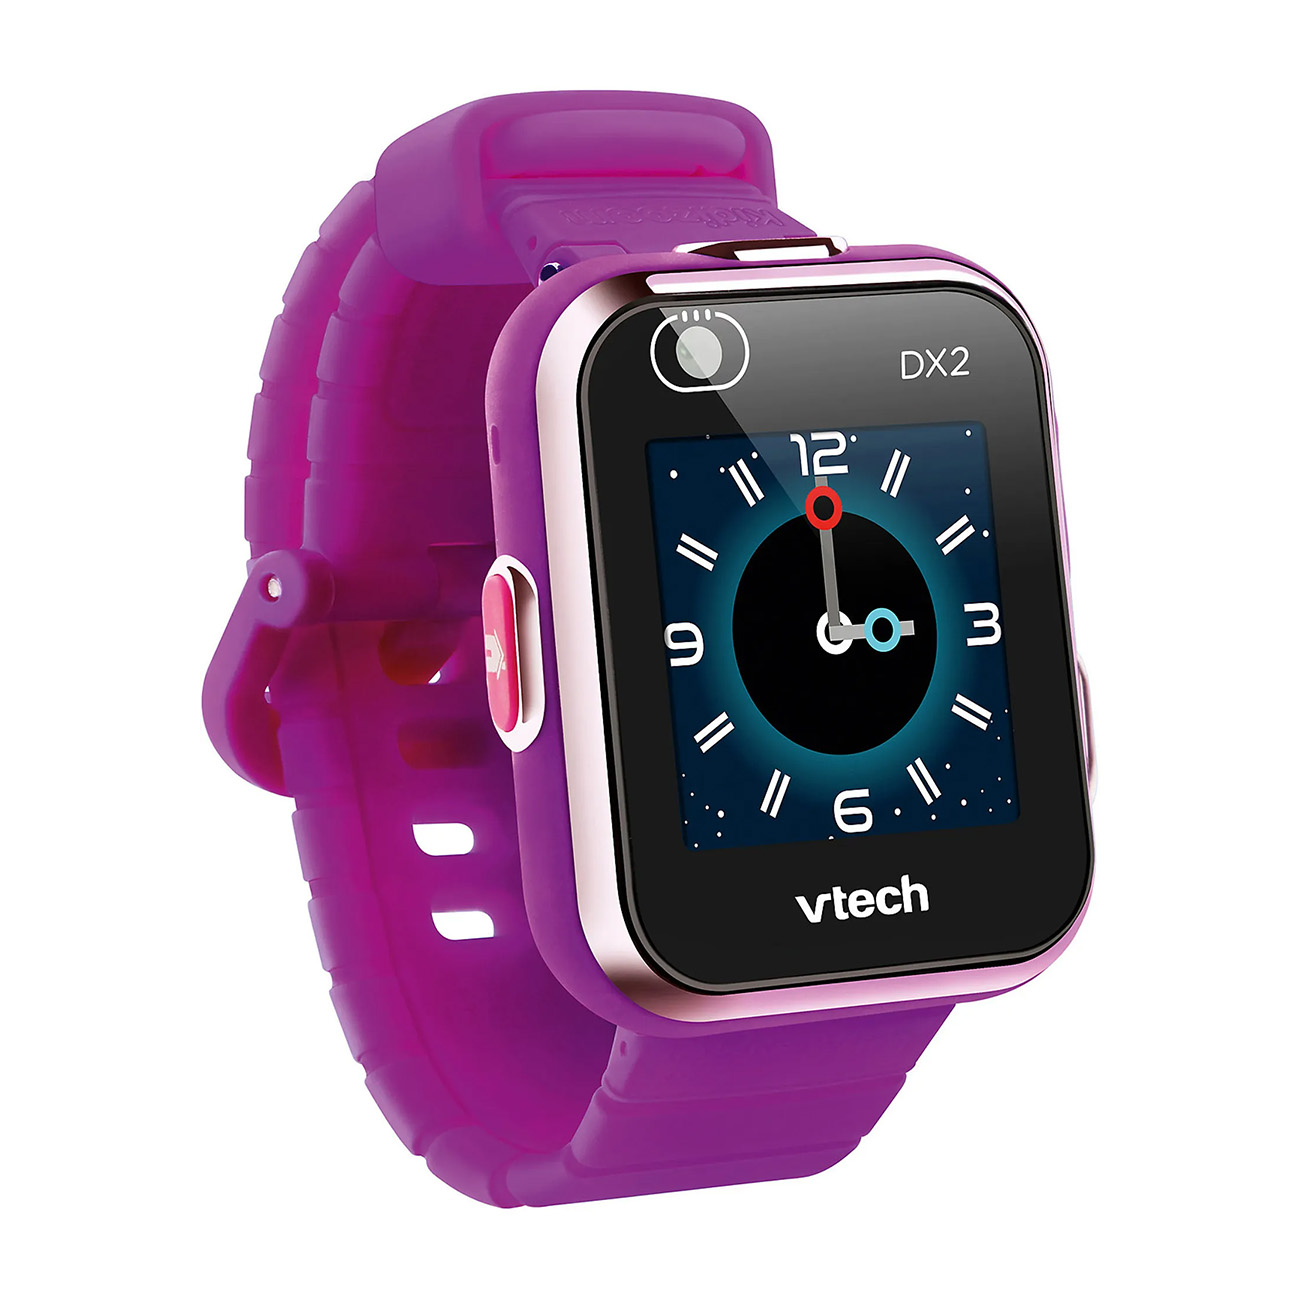 VTECH Kidizoom DX2 Silikon, lila Smartwatch